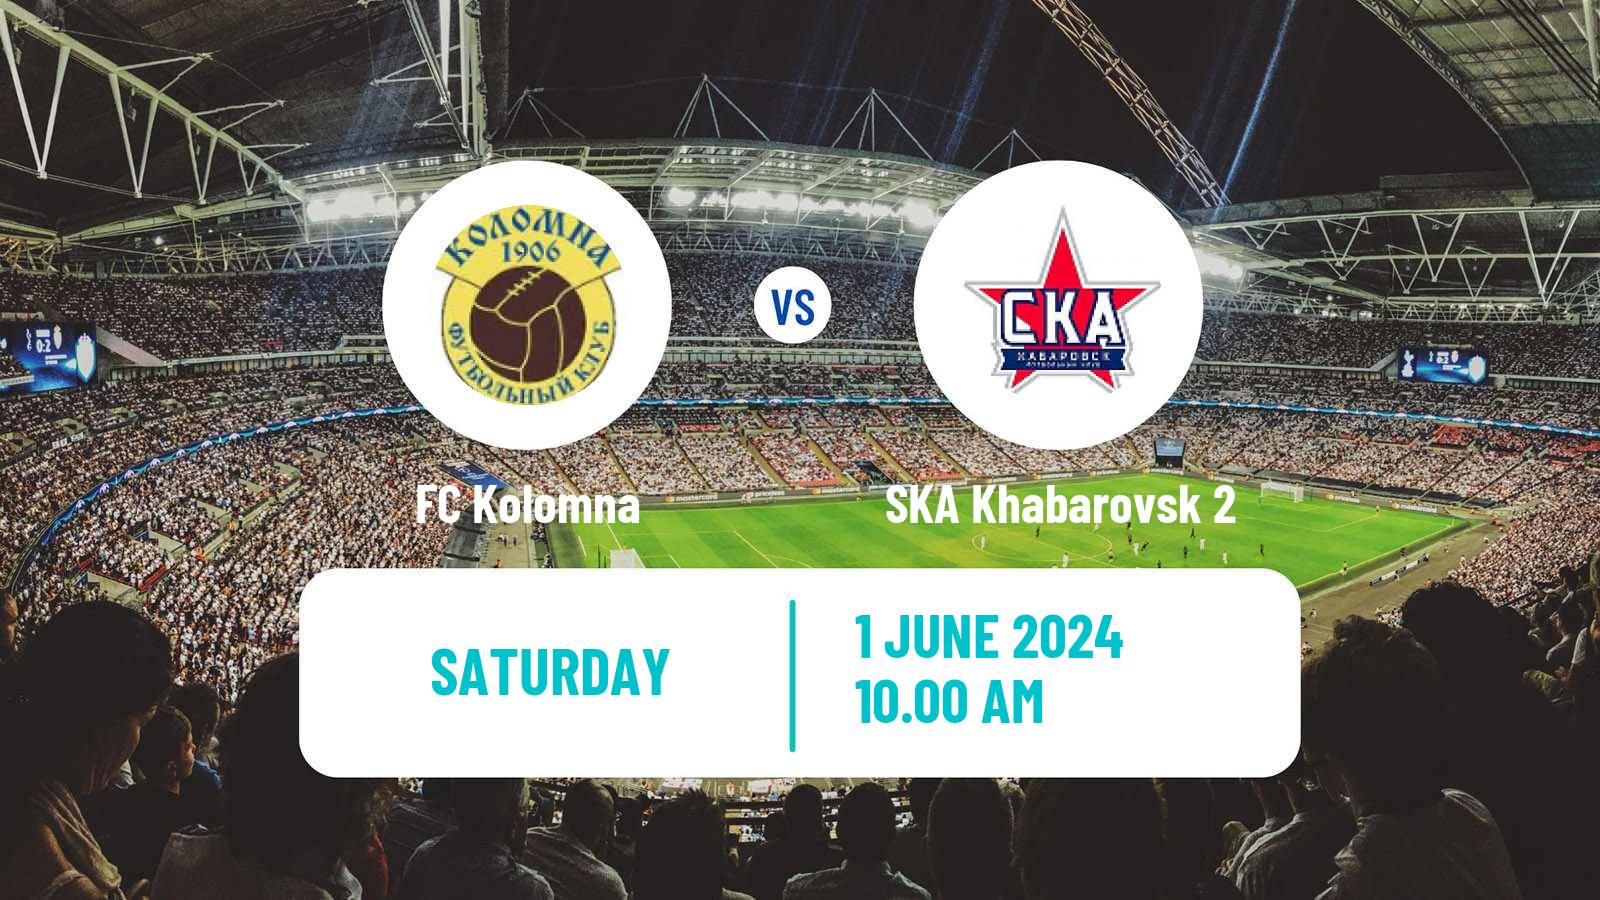 Soccer FNL 2 Division B Group 3 Kolomna - SKA Khabarovsk 2